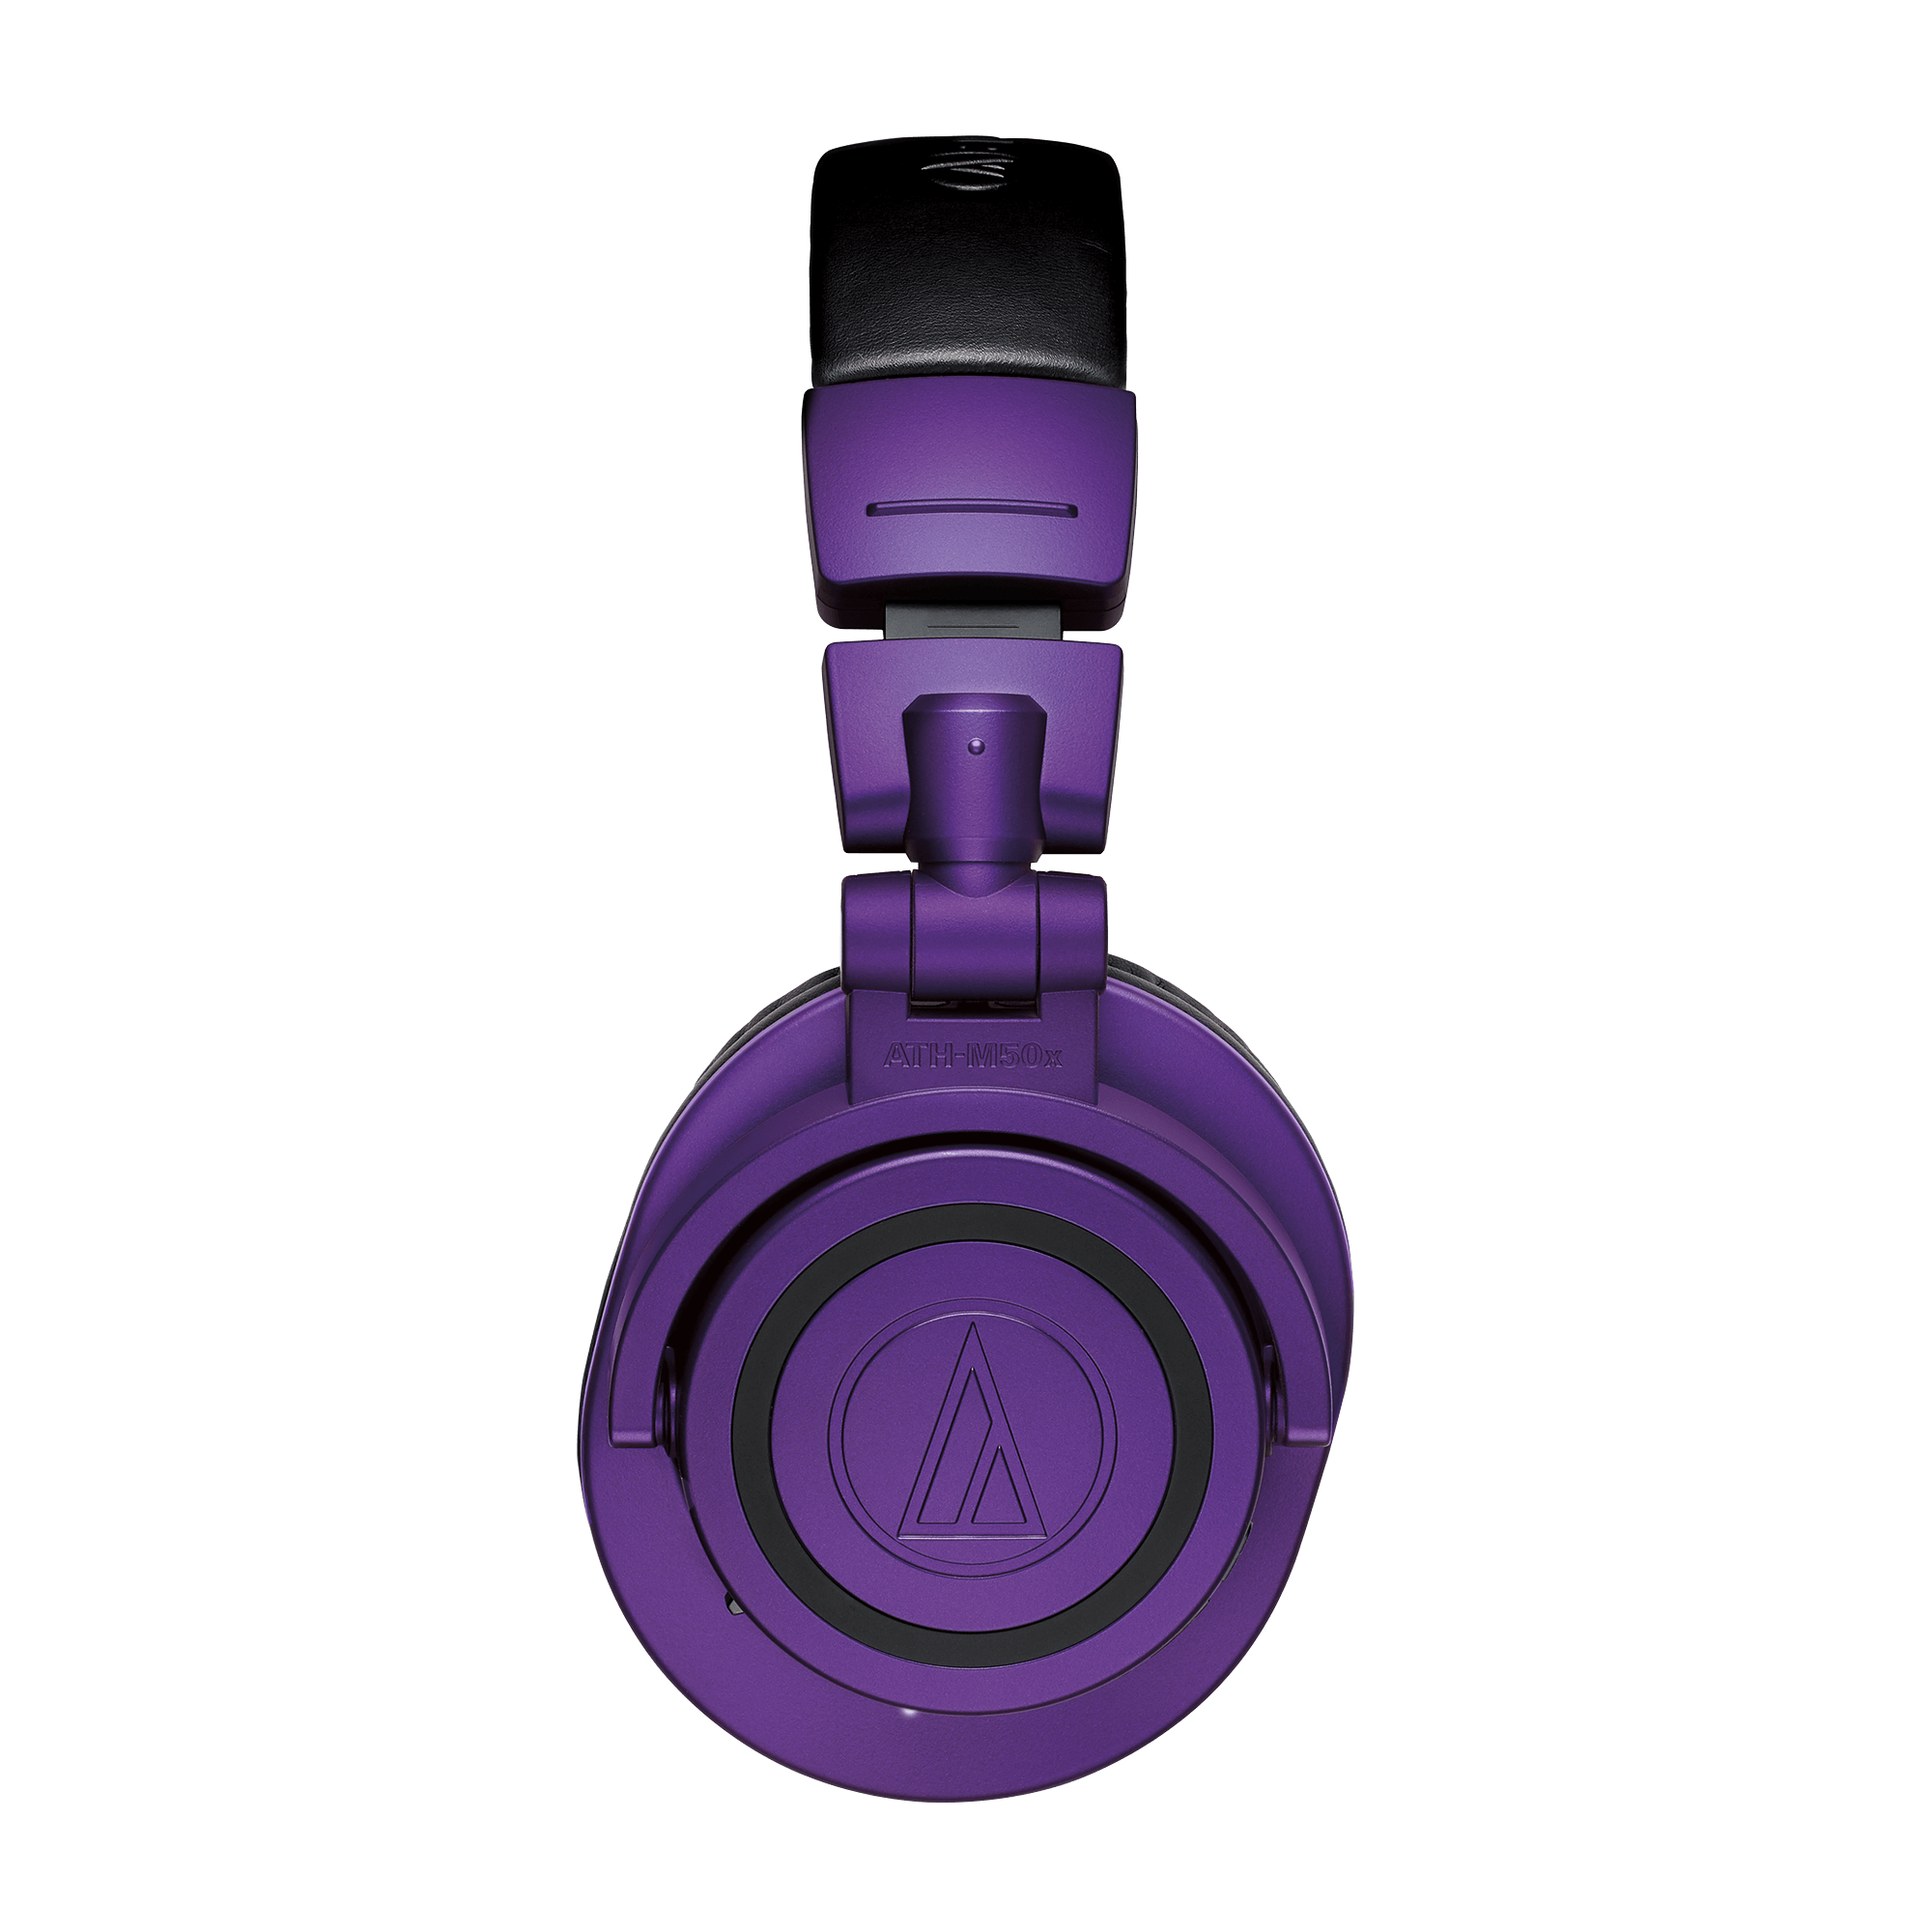 ATH-M50xBTBluetooth Over-ear Headphones